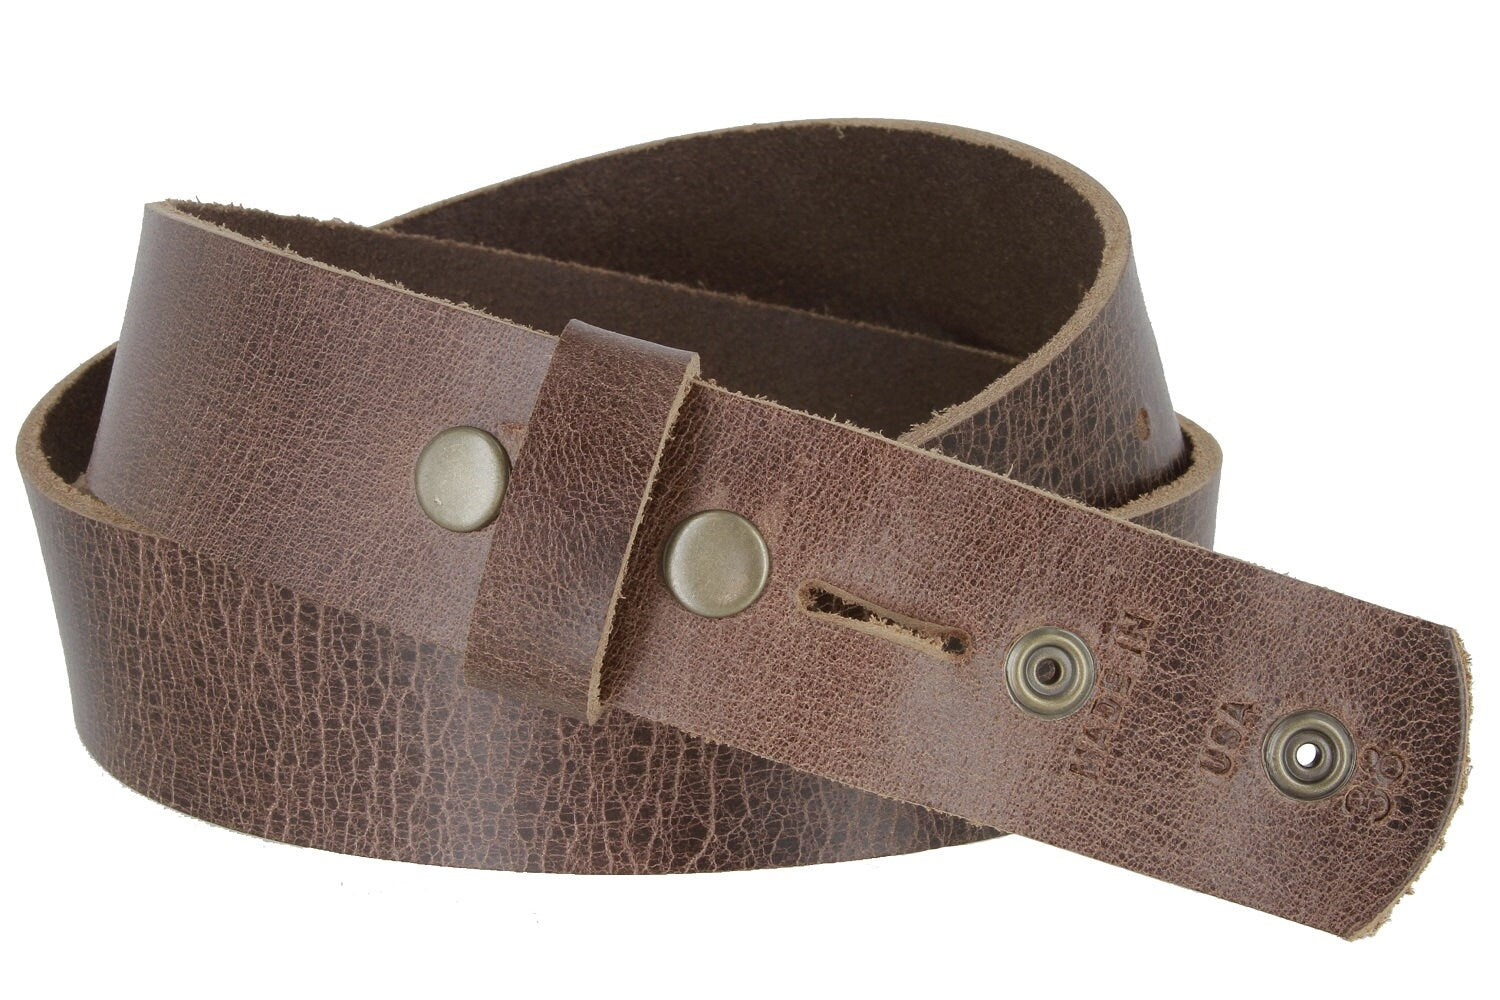 1.5'' Wide Crackled Brown Leather Belt Strap